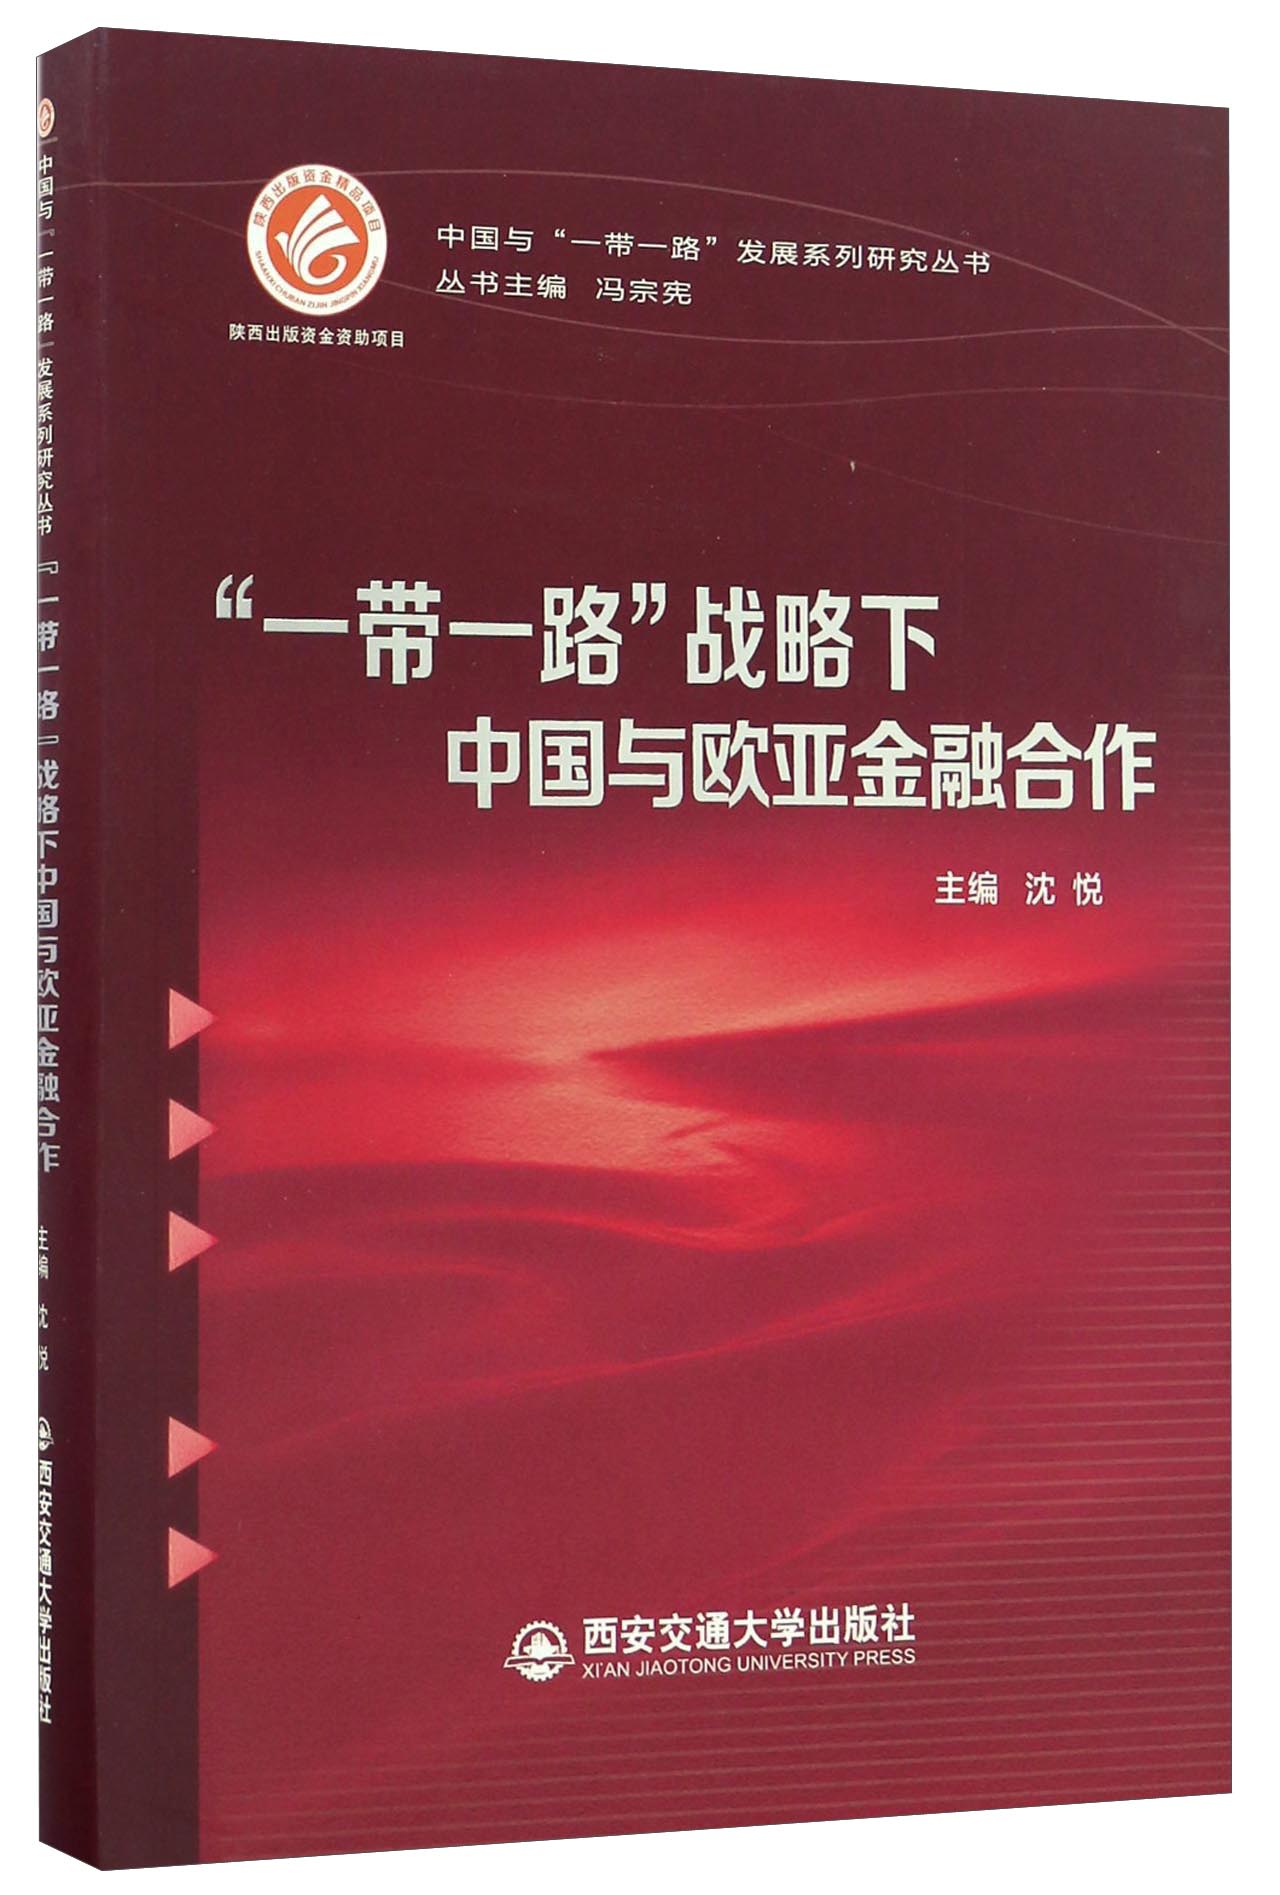 “一带一路”战略下中国与欧亚金融合作/中国与“一带一路”发展系列研究丛书 kindle格式下载